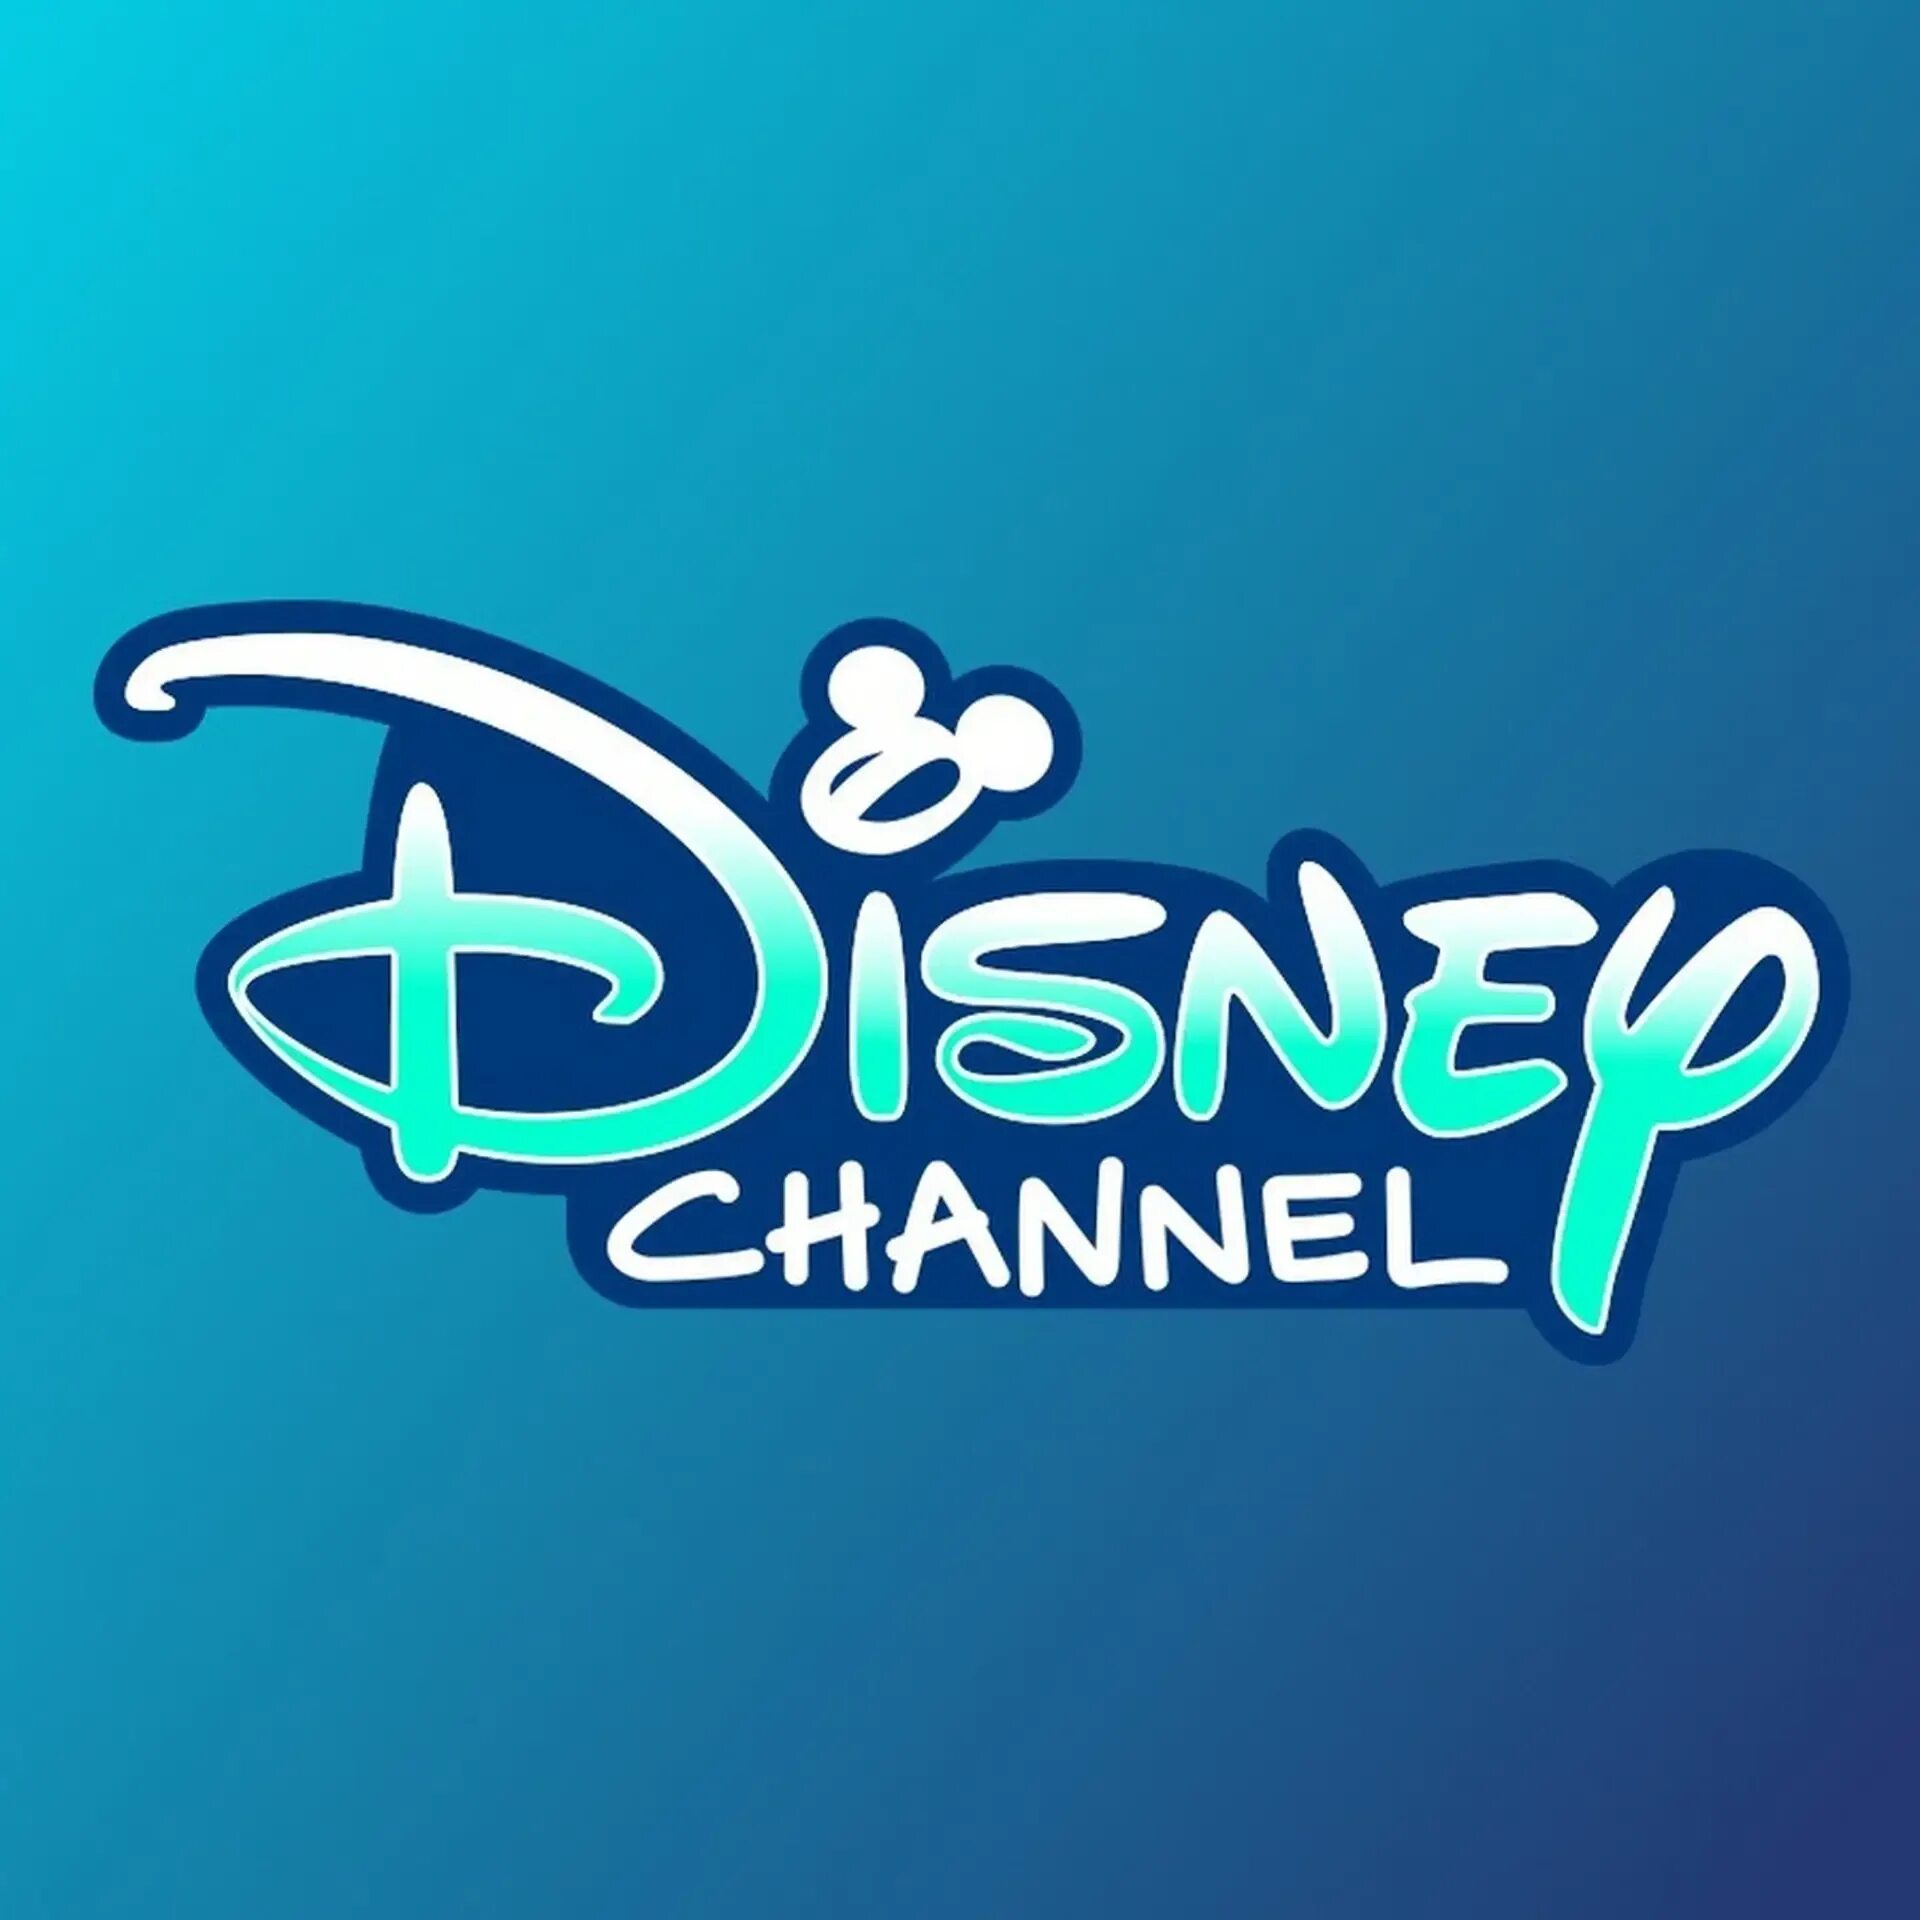 Канал дисней бесплатные. Канал Дисней. Дисней логотип. Дисней значок канала. Логотип телеканала канал Disney.